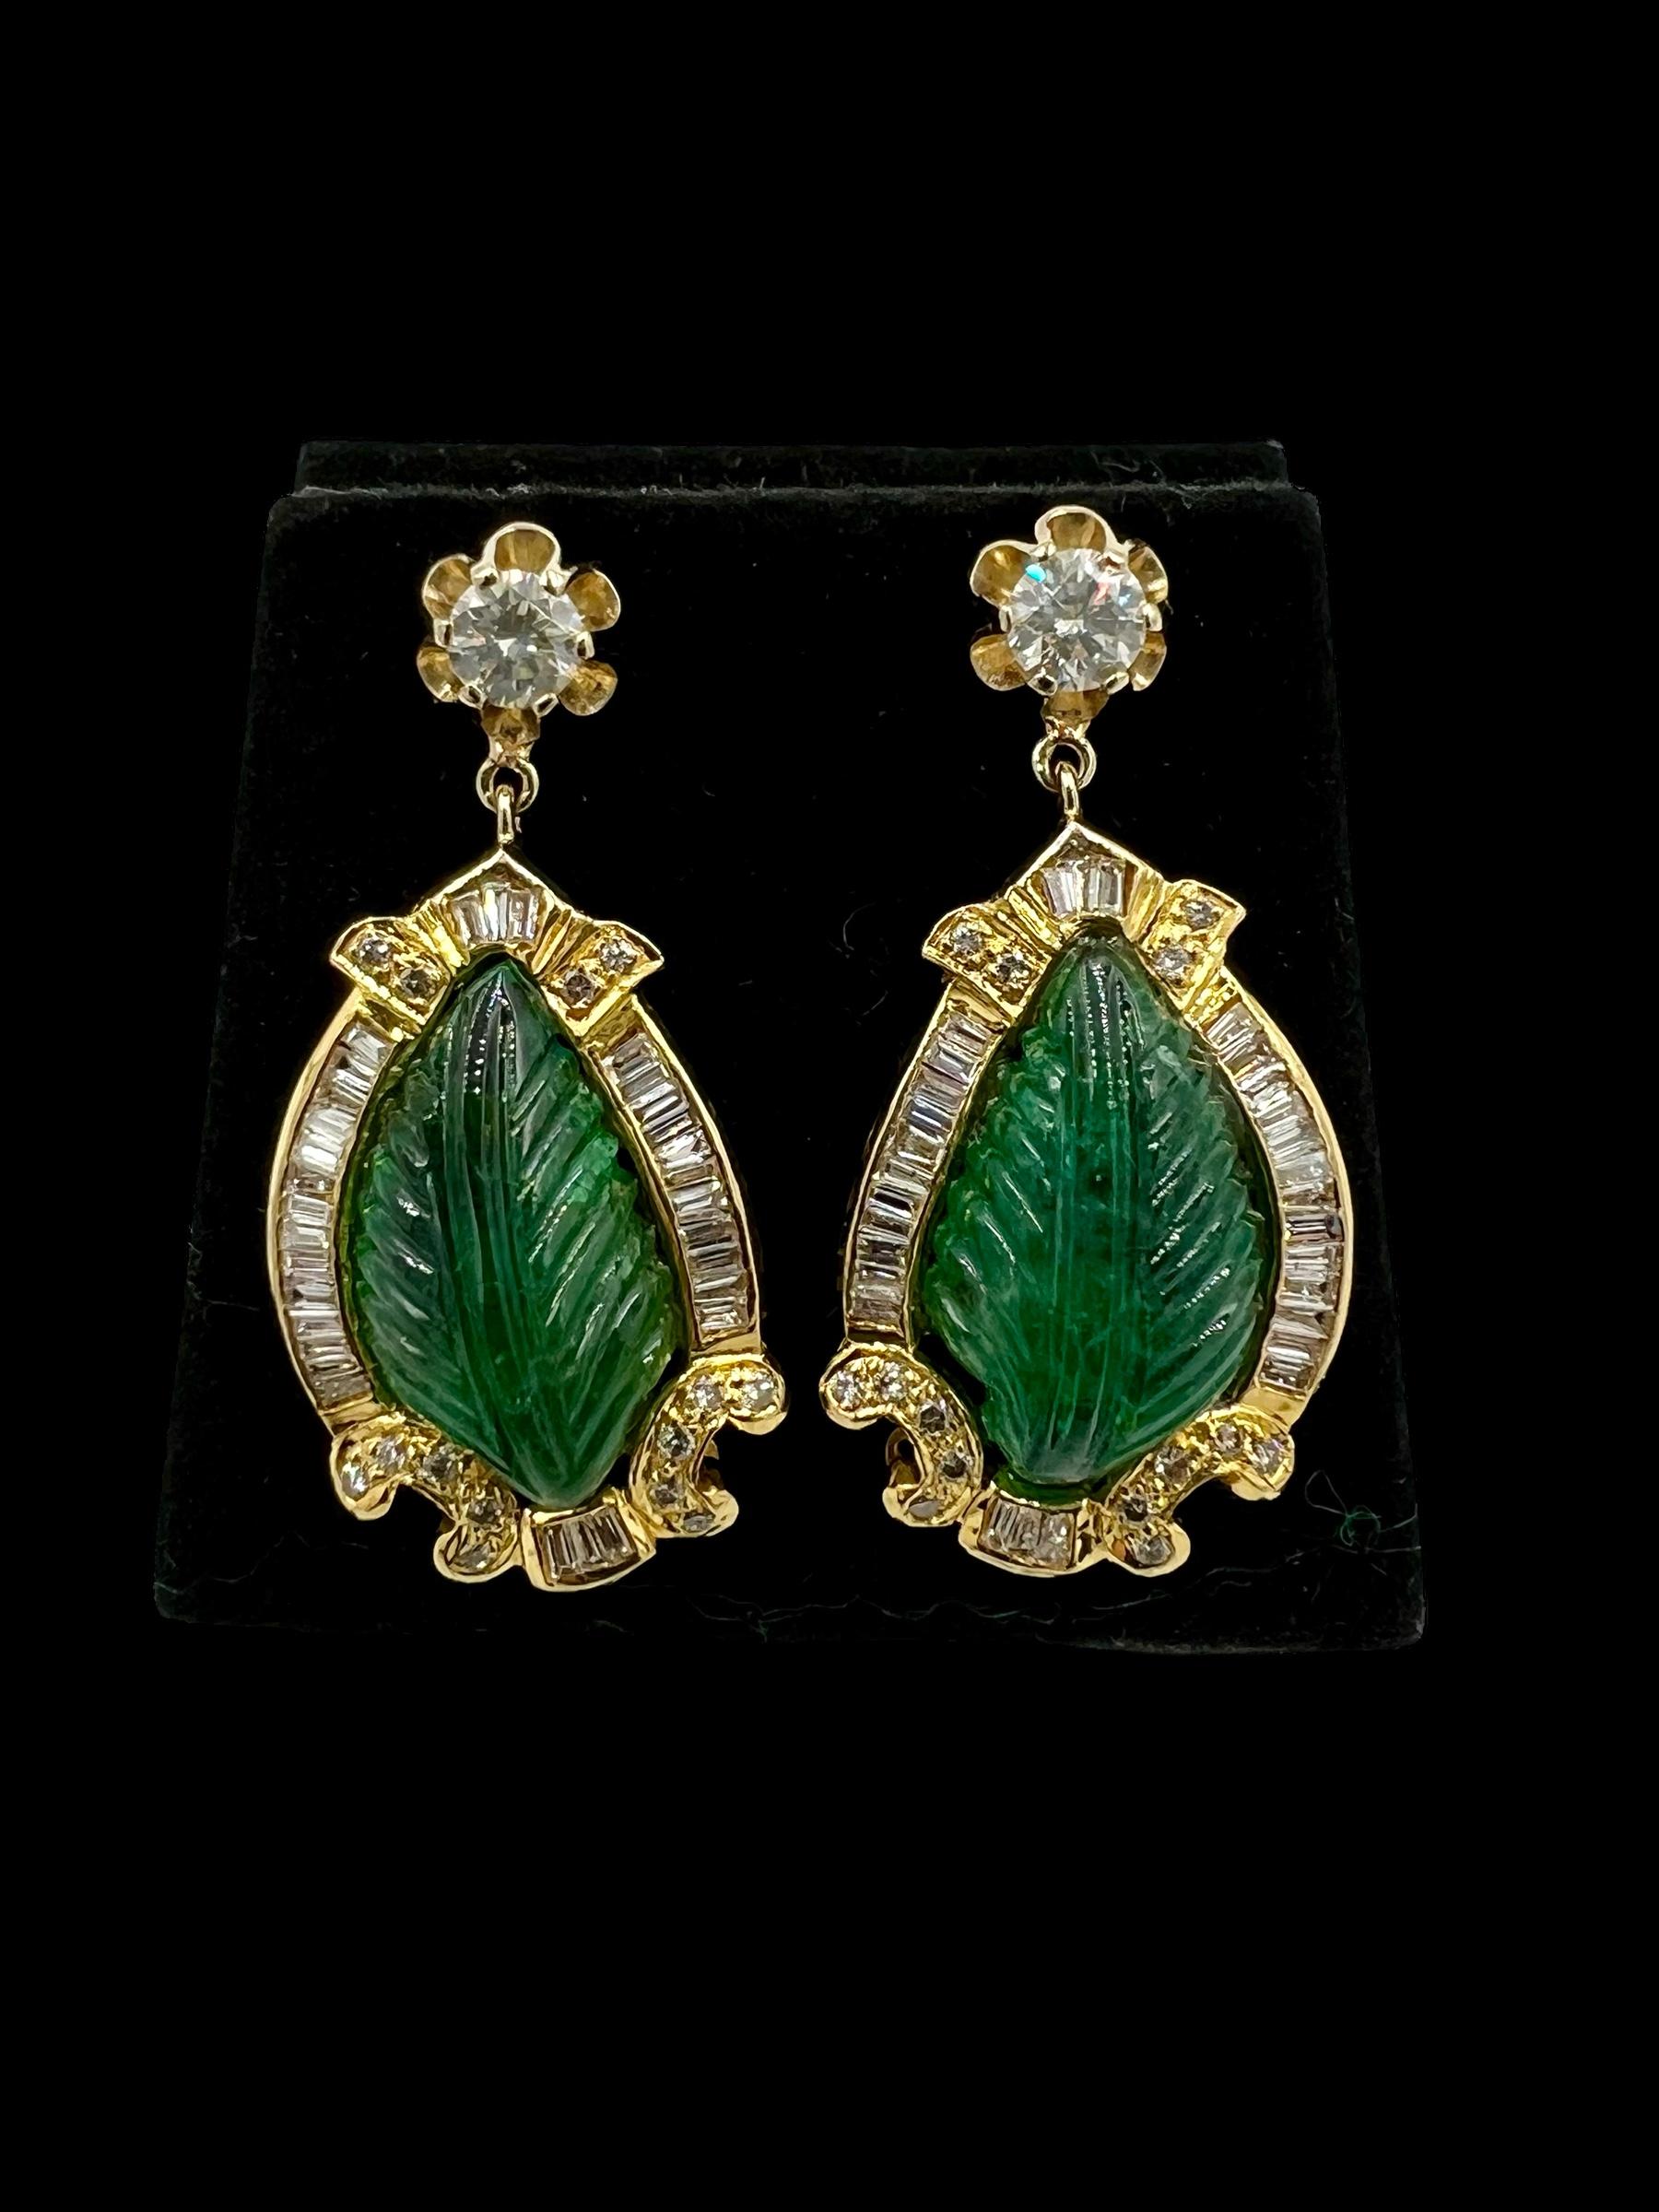 Vintage geschnitzt Smaragd Diamant Gelbgold Tropfen Ohrringe, circa 1970er Jahre.

Vintage Carved Emerald Diamond Yellow Gold Drop Earrings sind ein wahres Zeugnis für die zeitlose Schönheit und Eleganz von Vintage-Schmuck. Diese mit viel Liebe zum